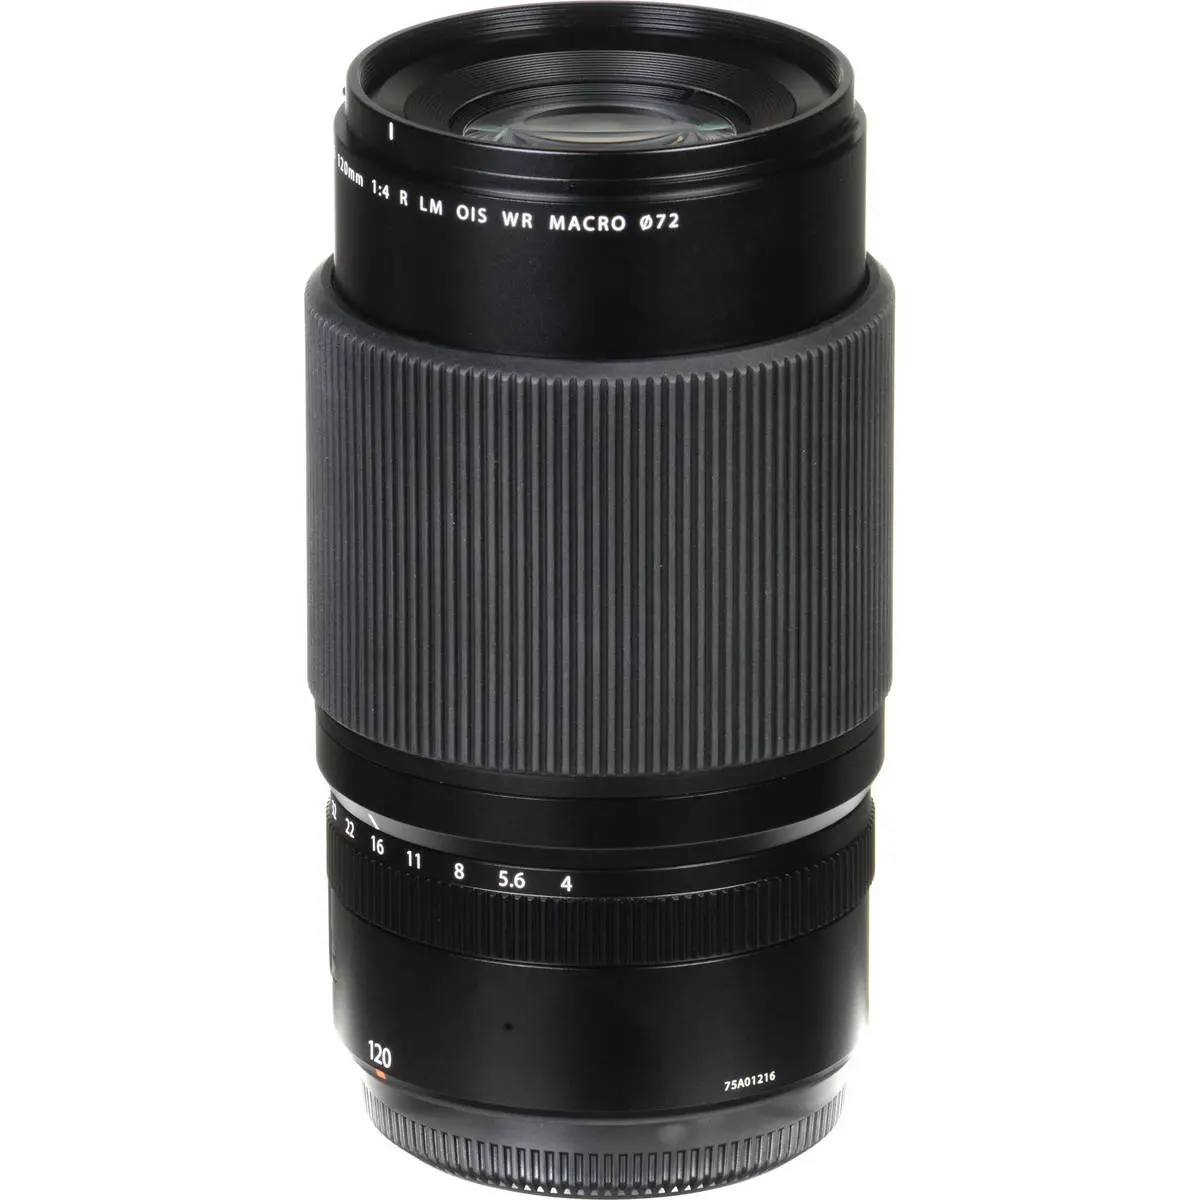 6. FUJINON GF 120mm f/4 R LM OIS WR Macro Lens Lens